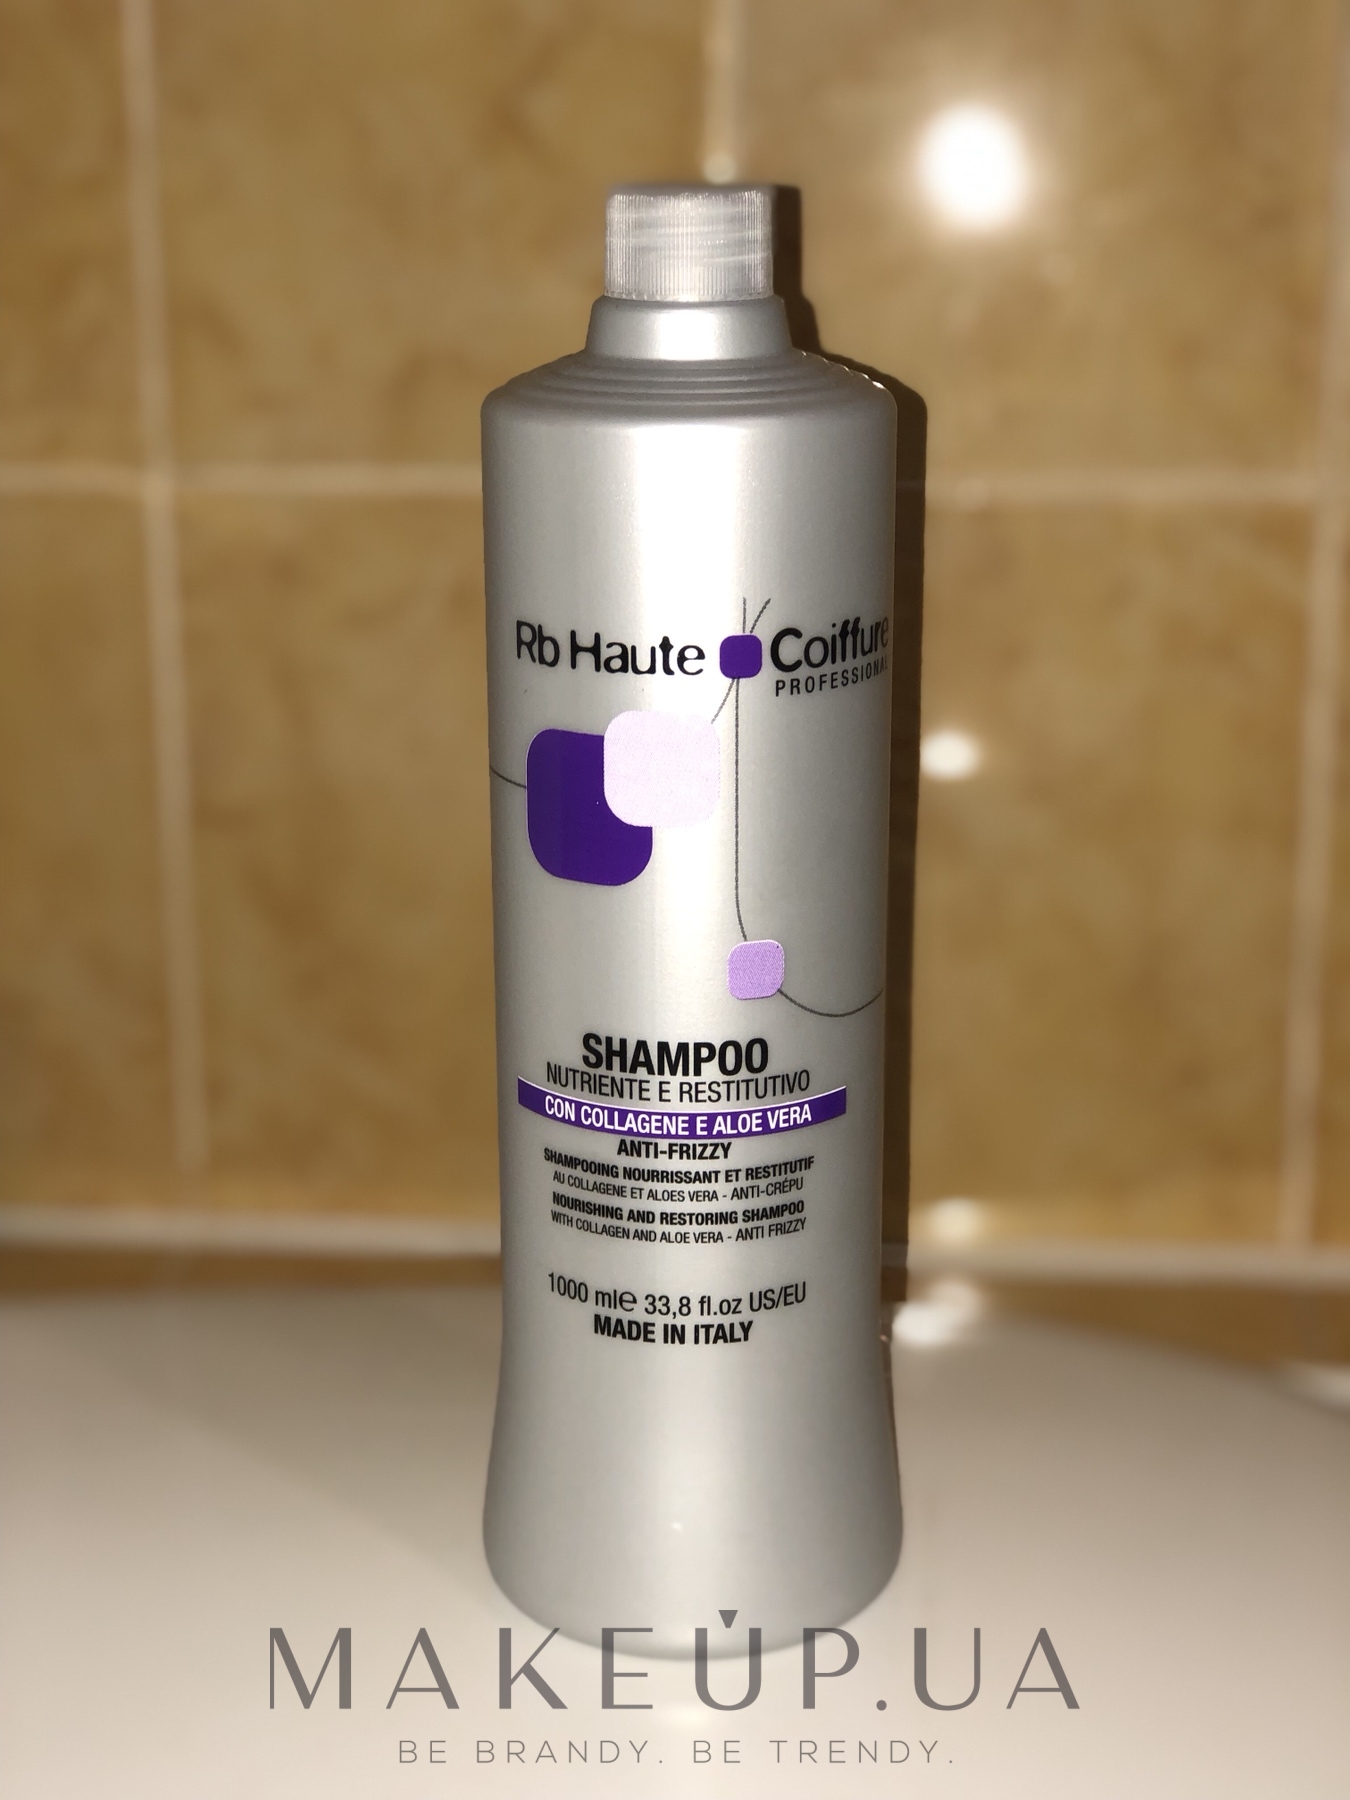 renee blanche szampon do wszystkich rodzajów włosów wizaz